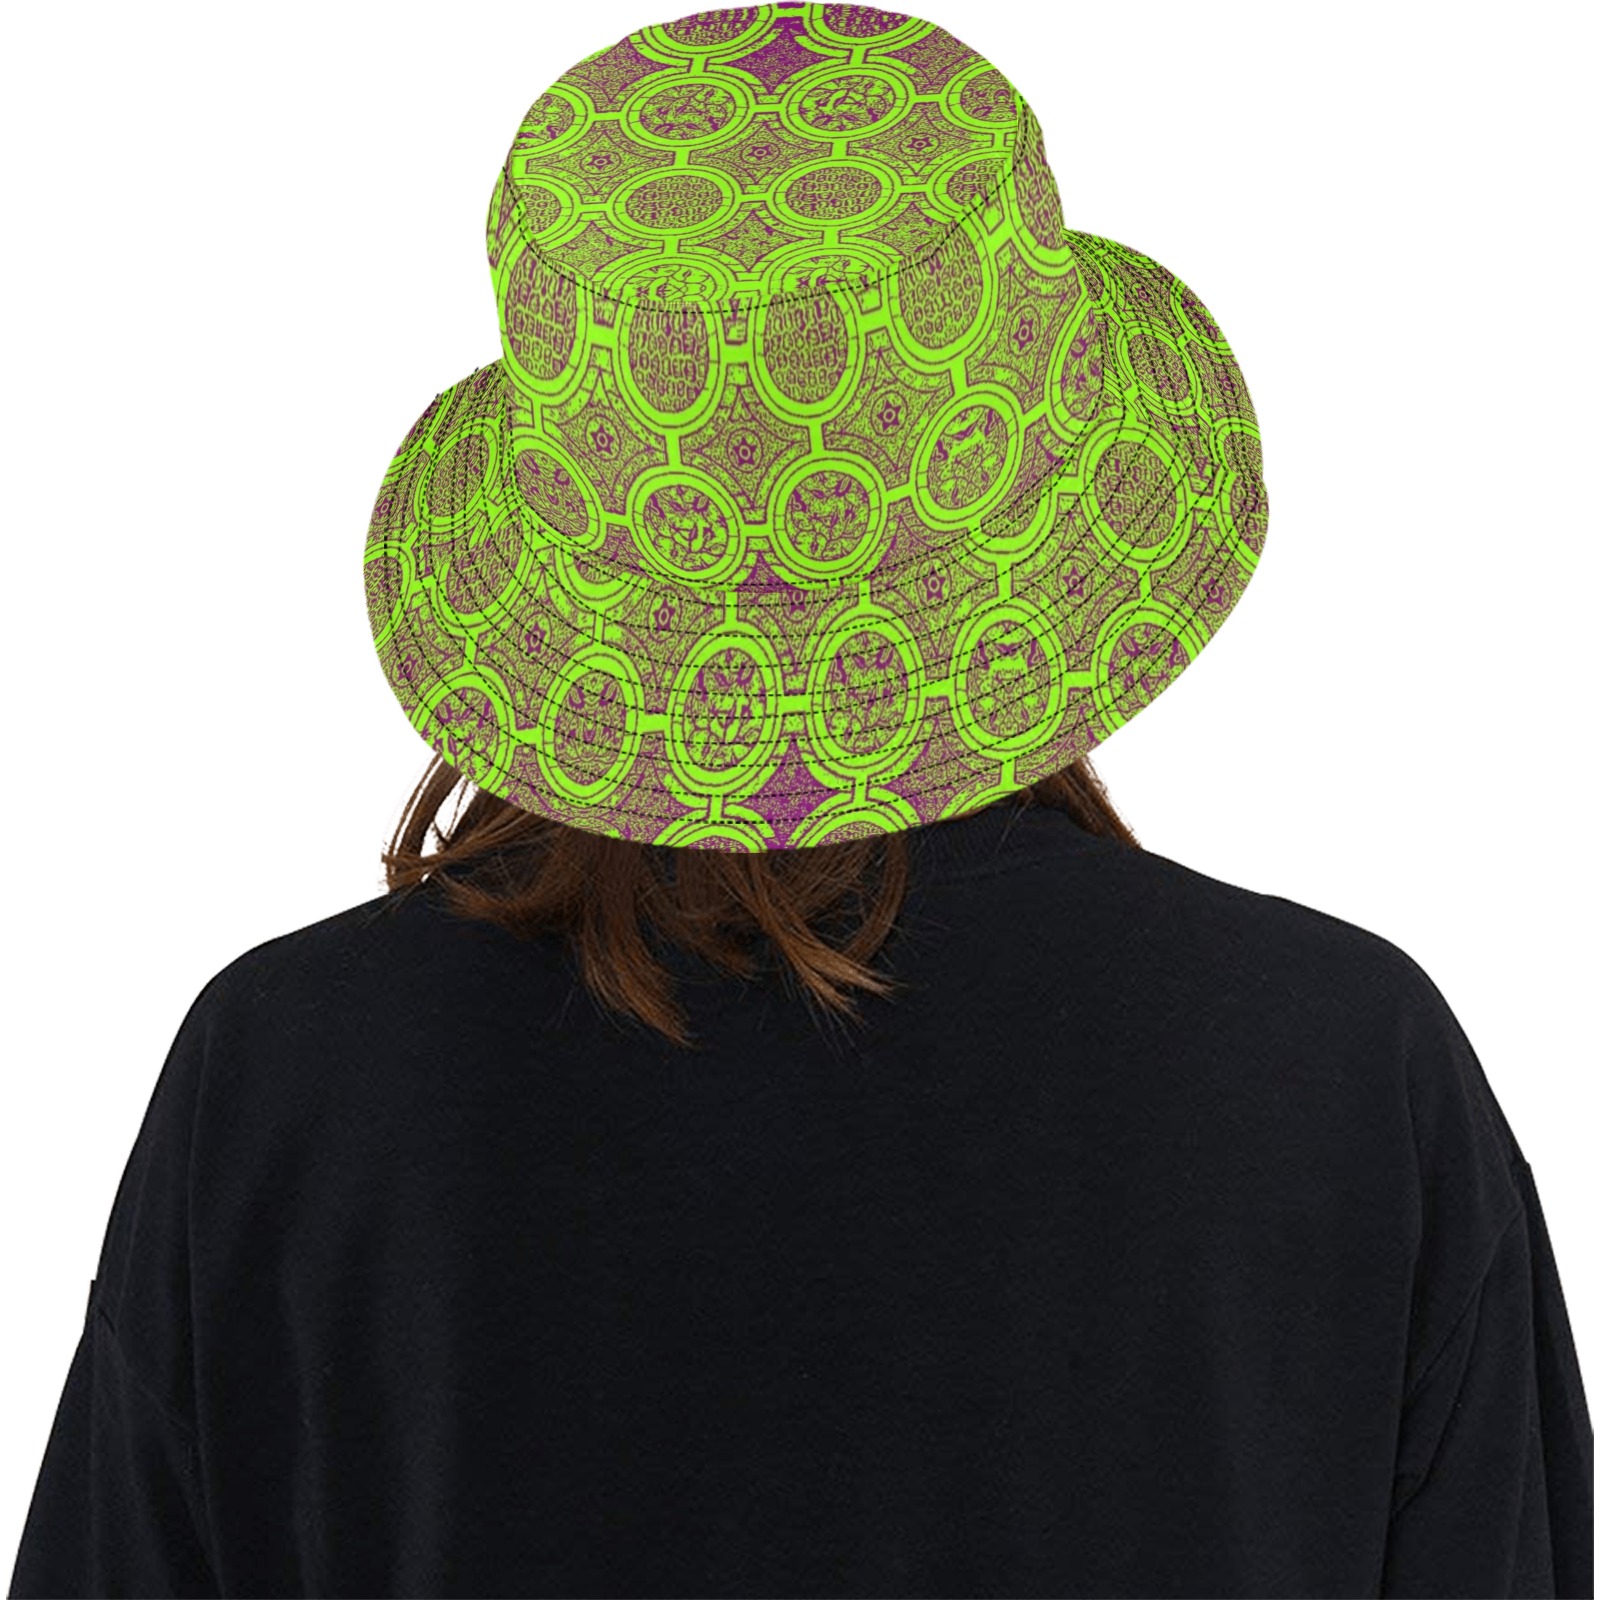 AFRICAN PRINT PATTERN 2 Unisex Summer Bucket Hat